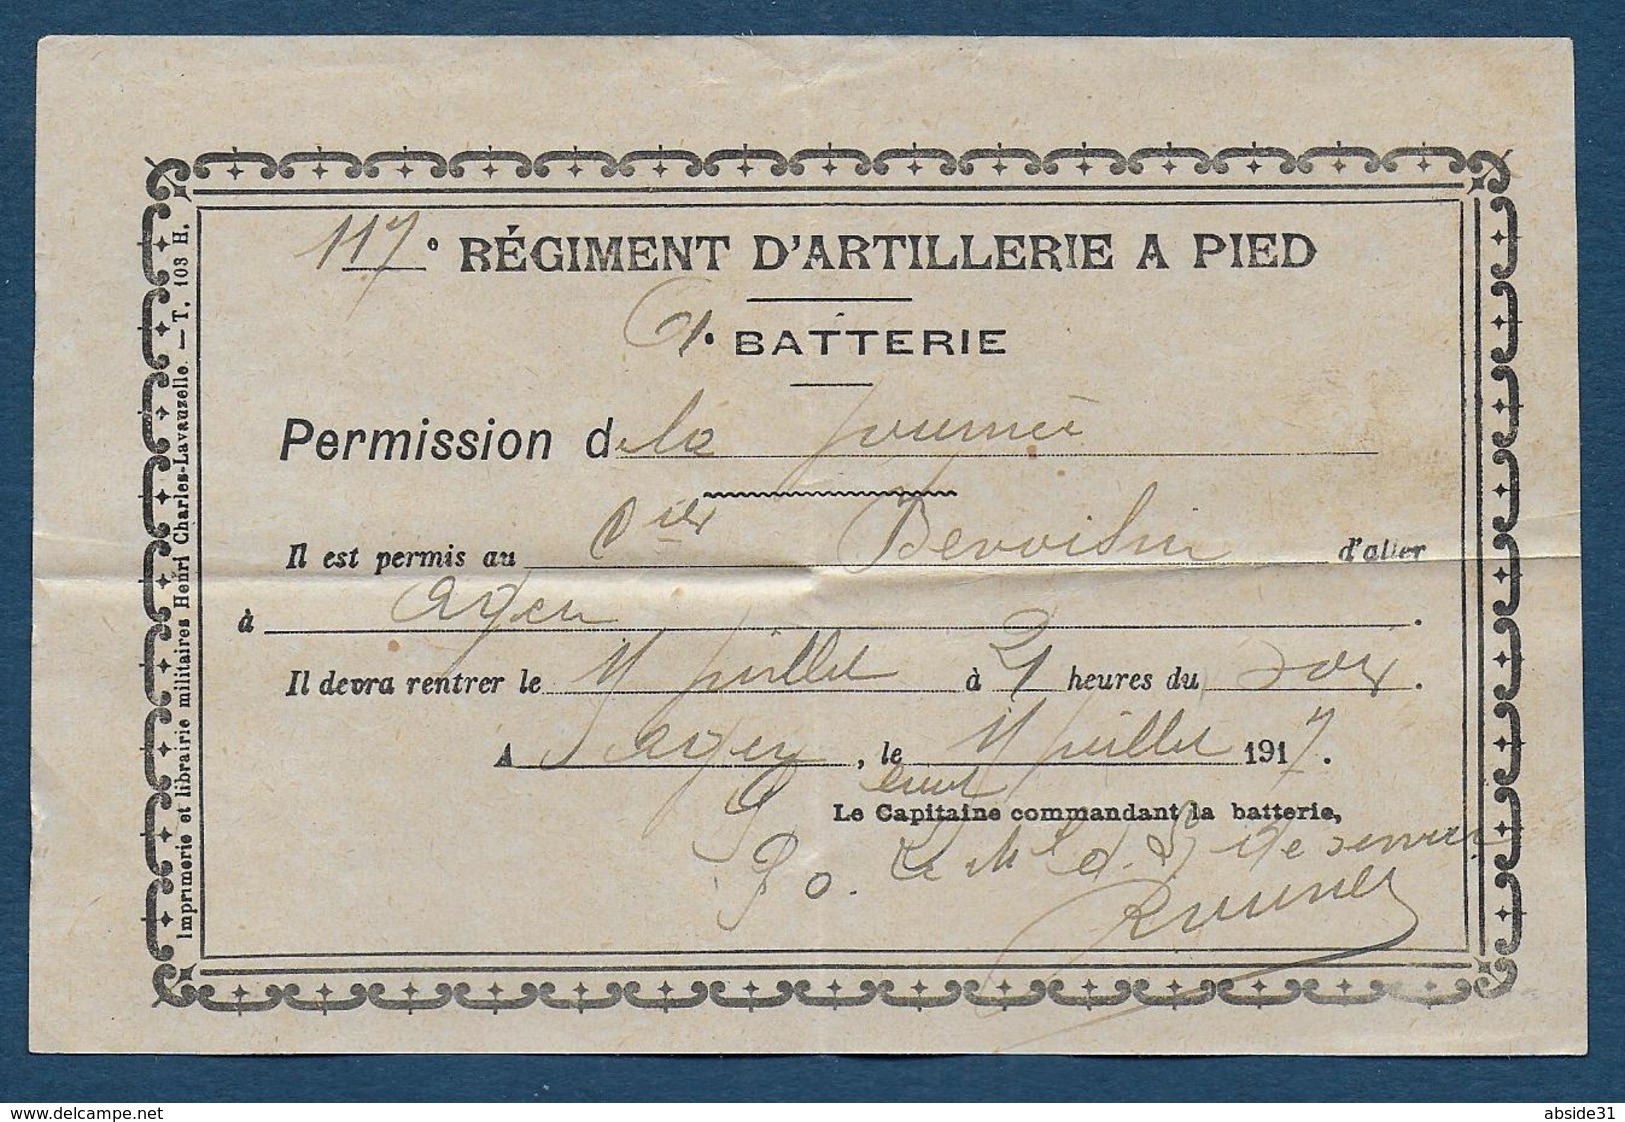 AGEN -  117e Régiment D'Artillerie à Pied - Permission De La Journée  1917 - Documents